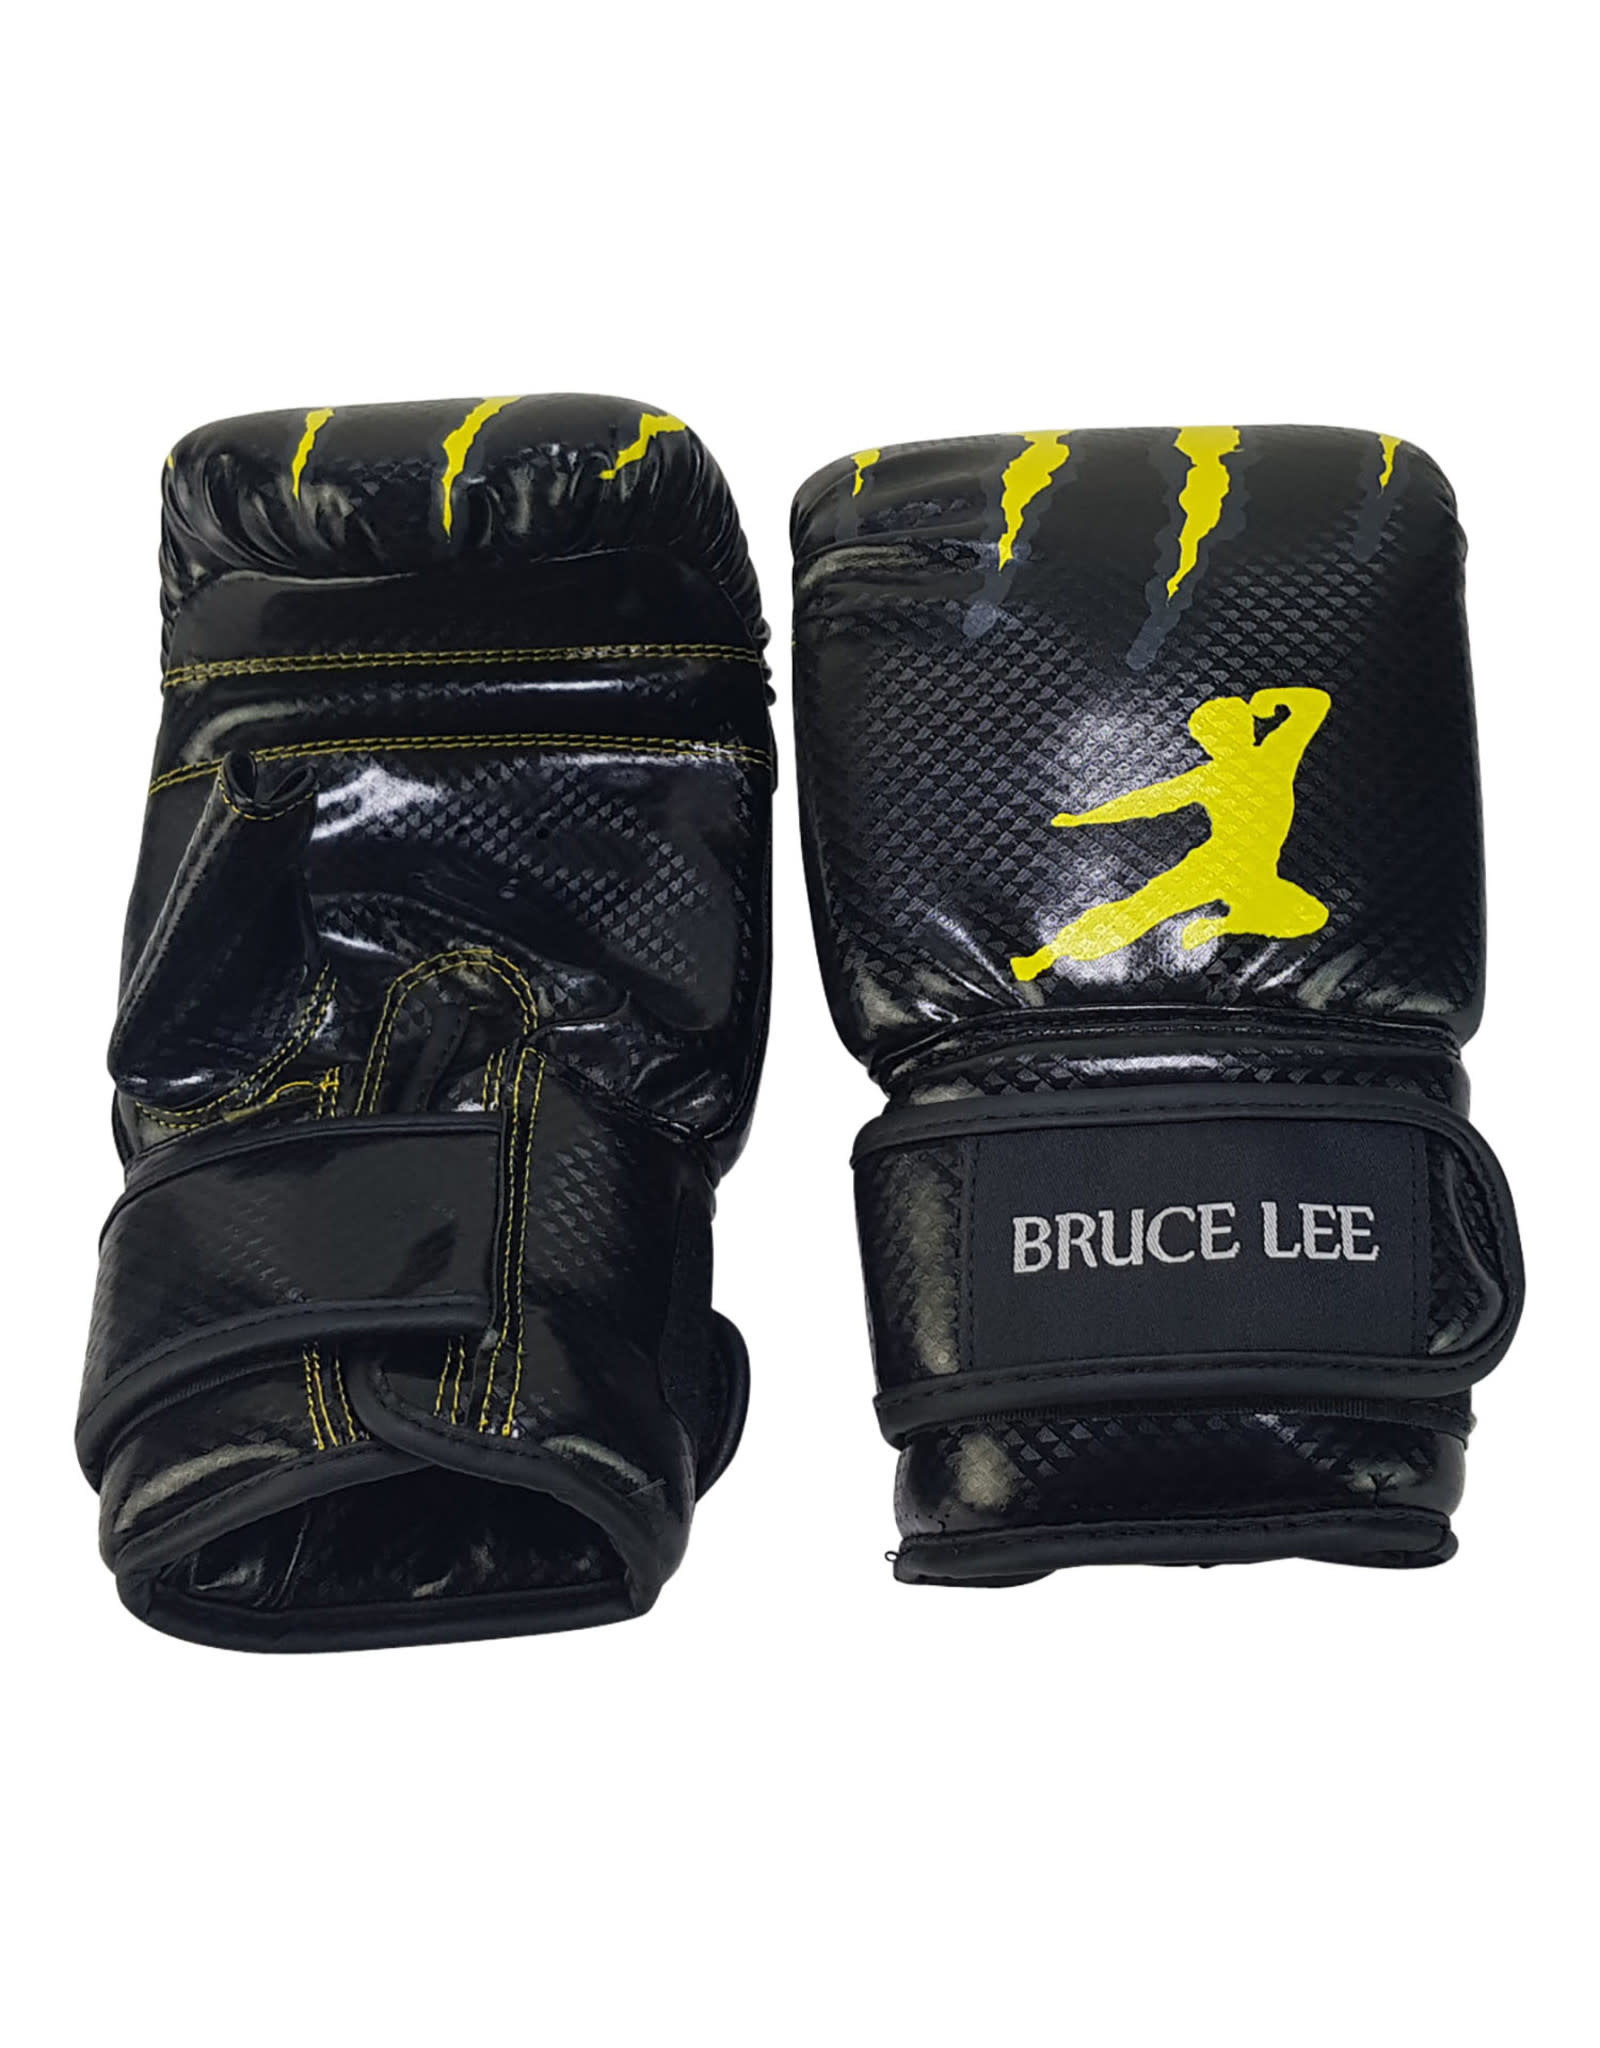 Bruce Lee Signature Bag Gloves